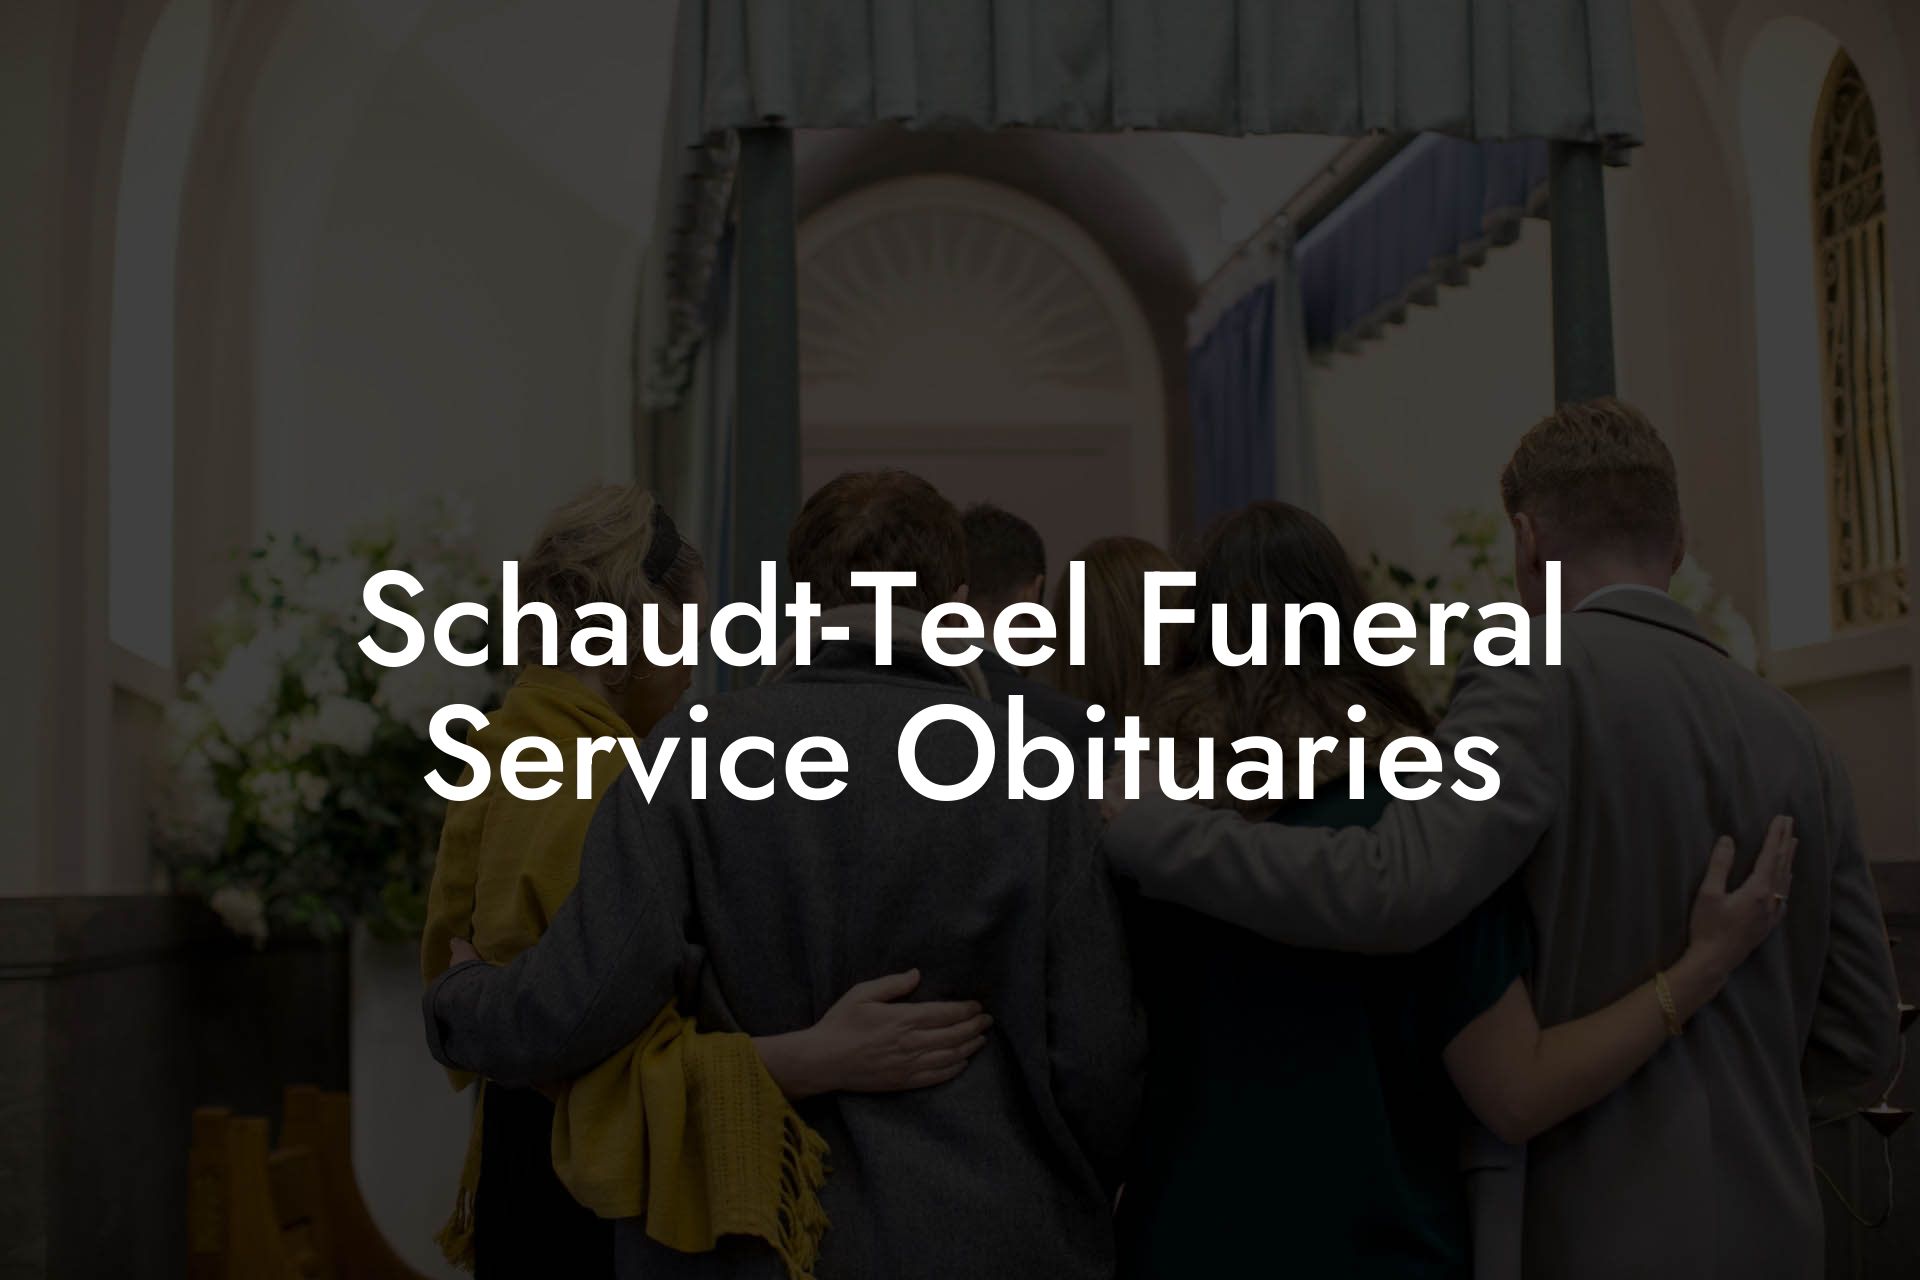 Schaudt-Teel Funeral Service Obituaries